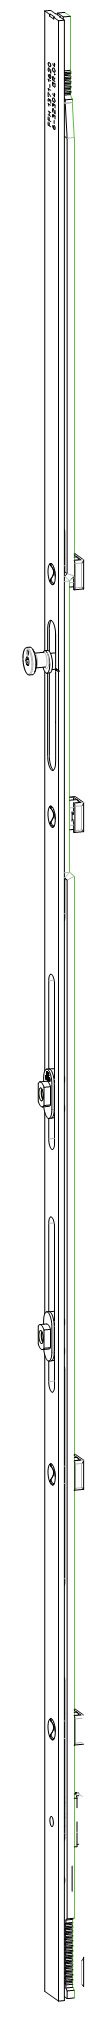 GU-ITALIA -  Cremonese GU-966 per complanare parallelo altezza maniglia fissa prolungabile senza dss - gr / dim. 465 - alt. man. 440 - lbb/hbb 820 - 995